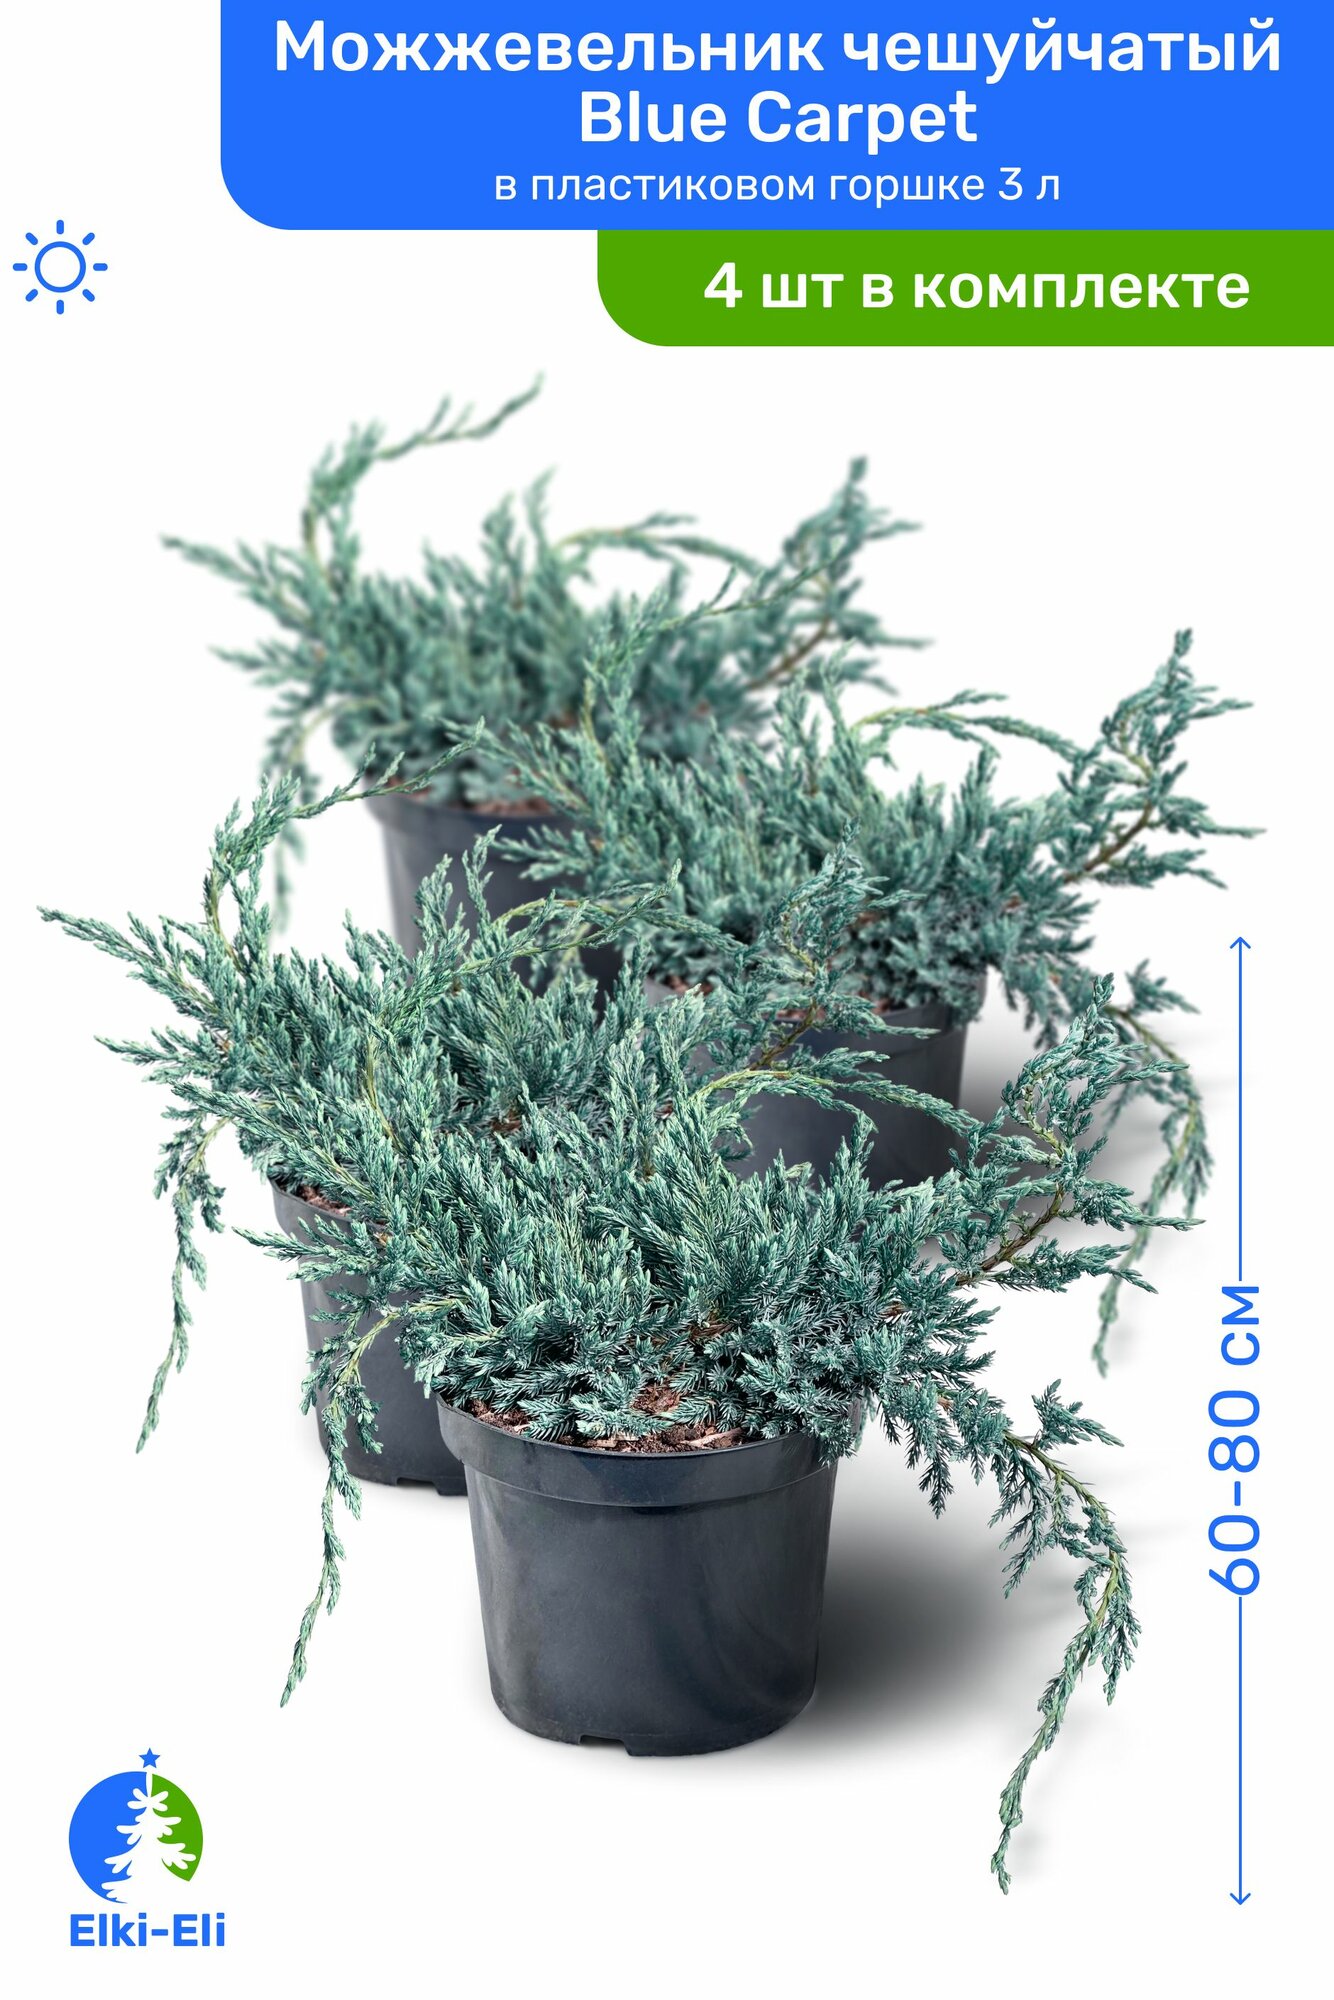 Можжевельник чешуйчатый Blue Carpet (Блю Карпет) 60-80 см в пластиковом горшке С3 саженец хвойное живое растение комплект из 4 шт